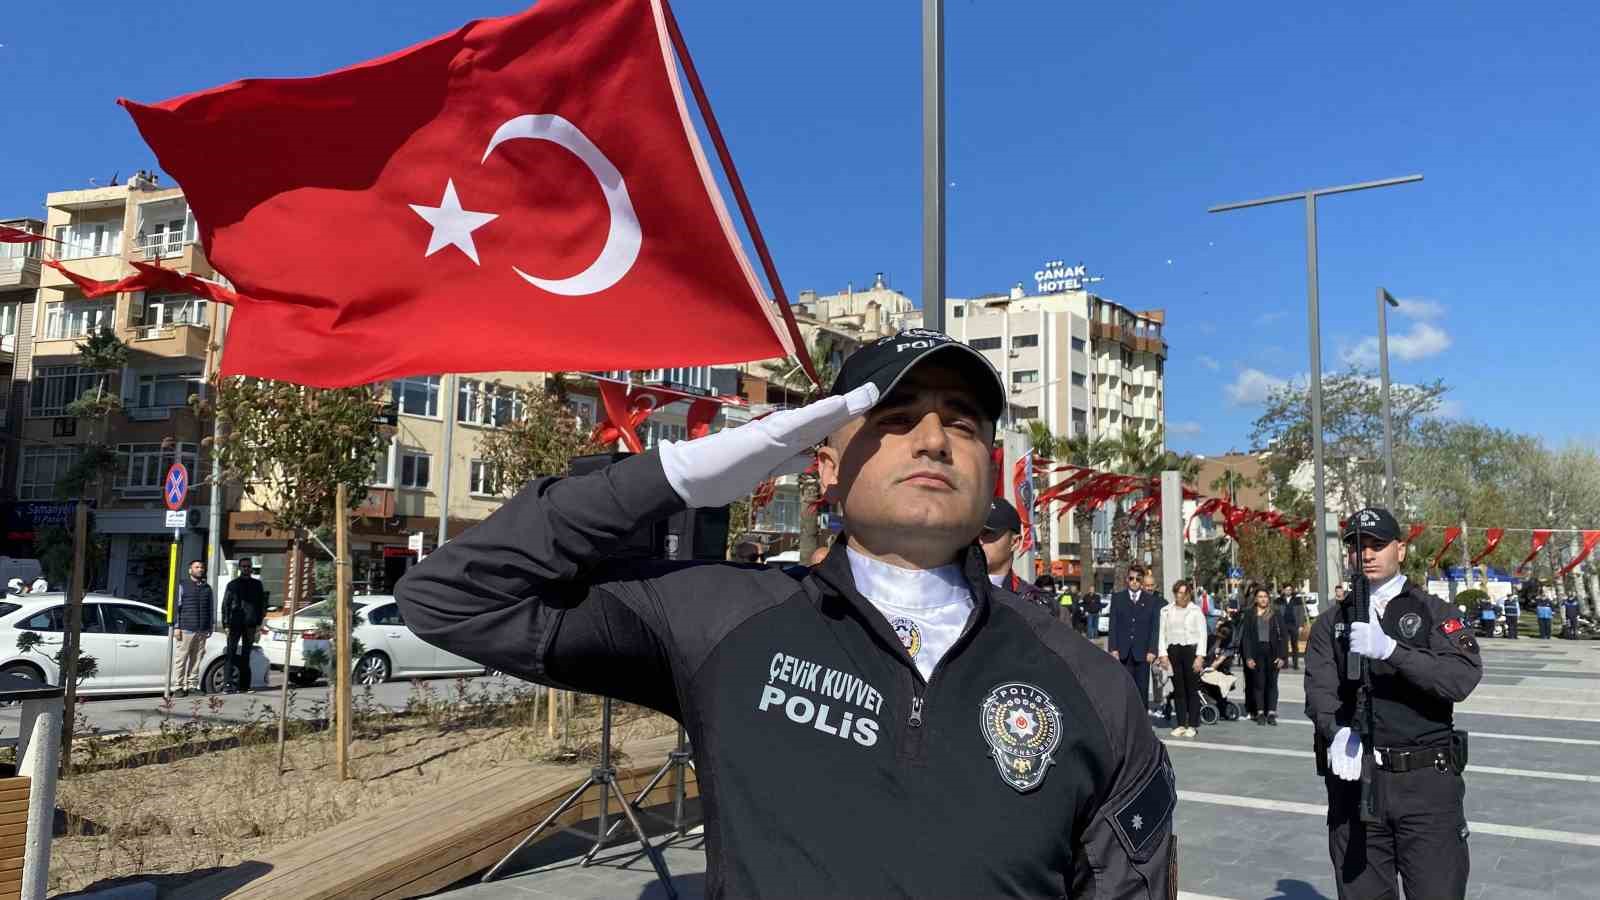 canakkalede turk polis teskilatinin 179uncu yil donumu kutlandi 0 9dweFpcf